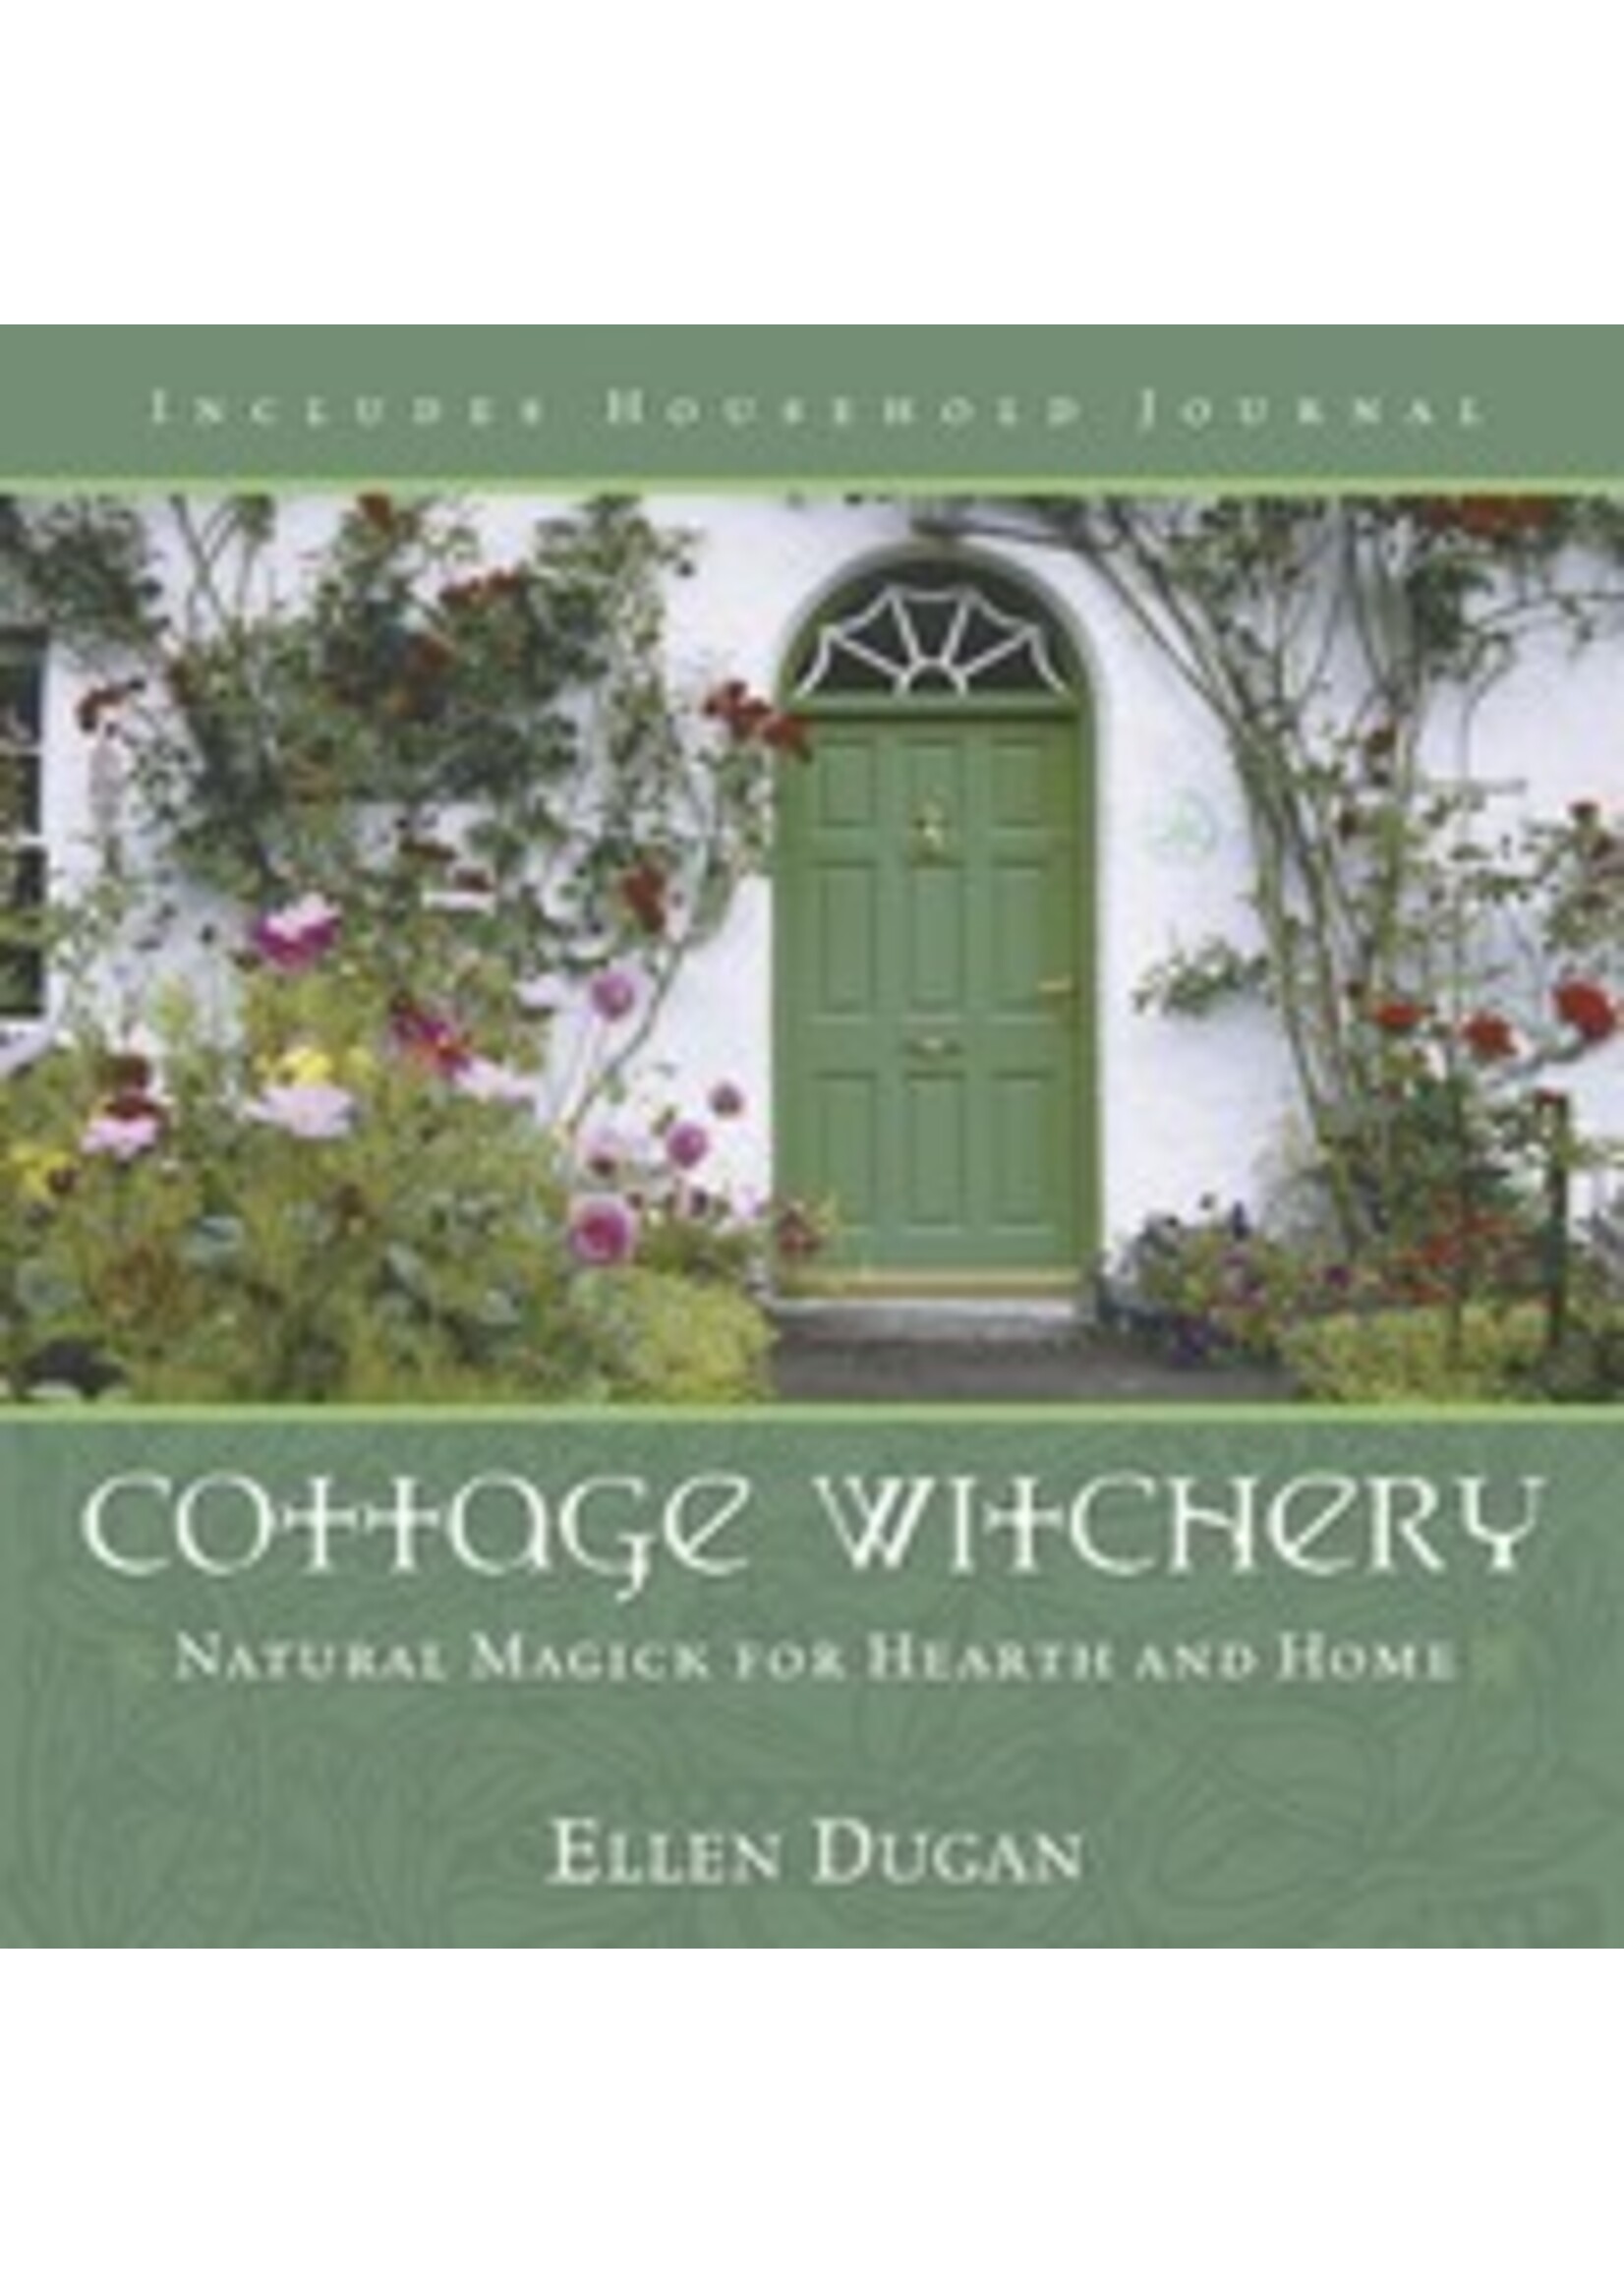 Cottage Witchery by  Ellen Dugan